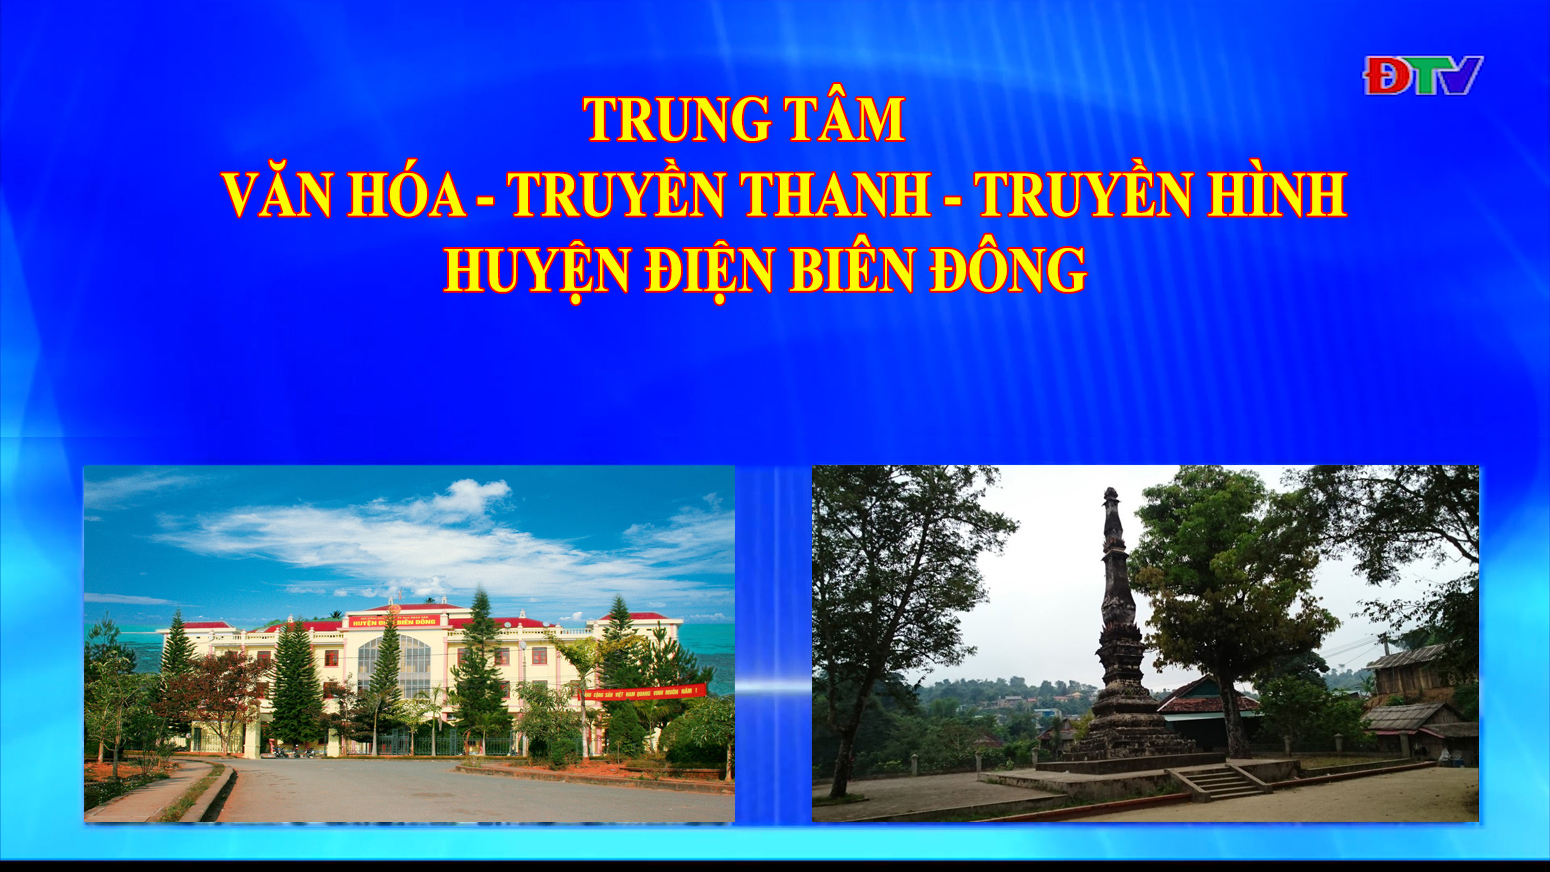 Trung tâm VH-TTTH huyện Điện Biên Đông (Ngày 12-12-2020)